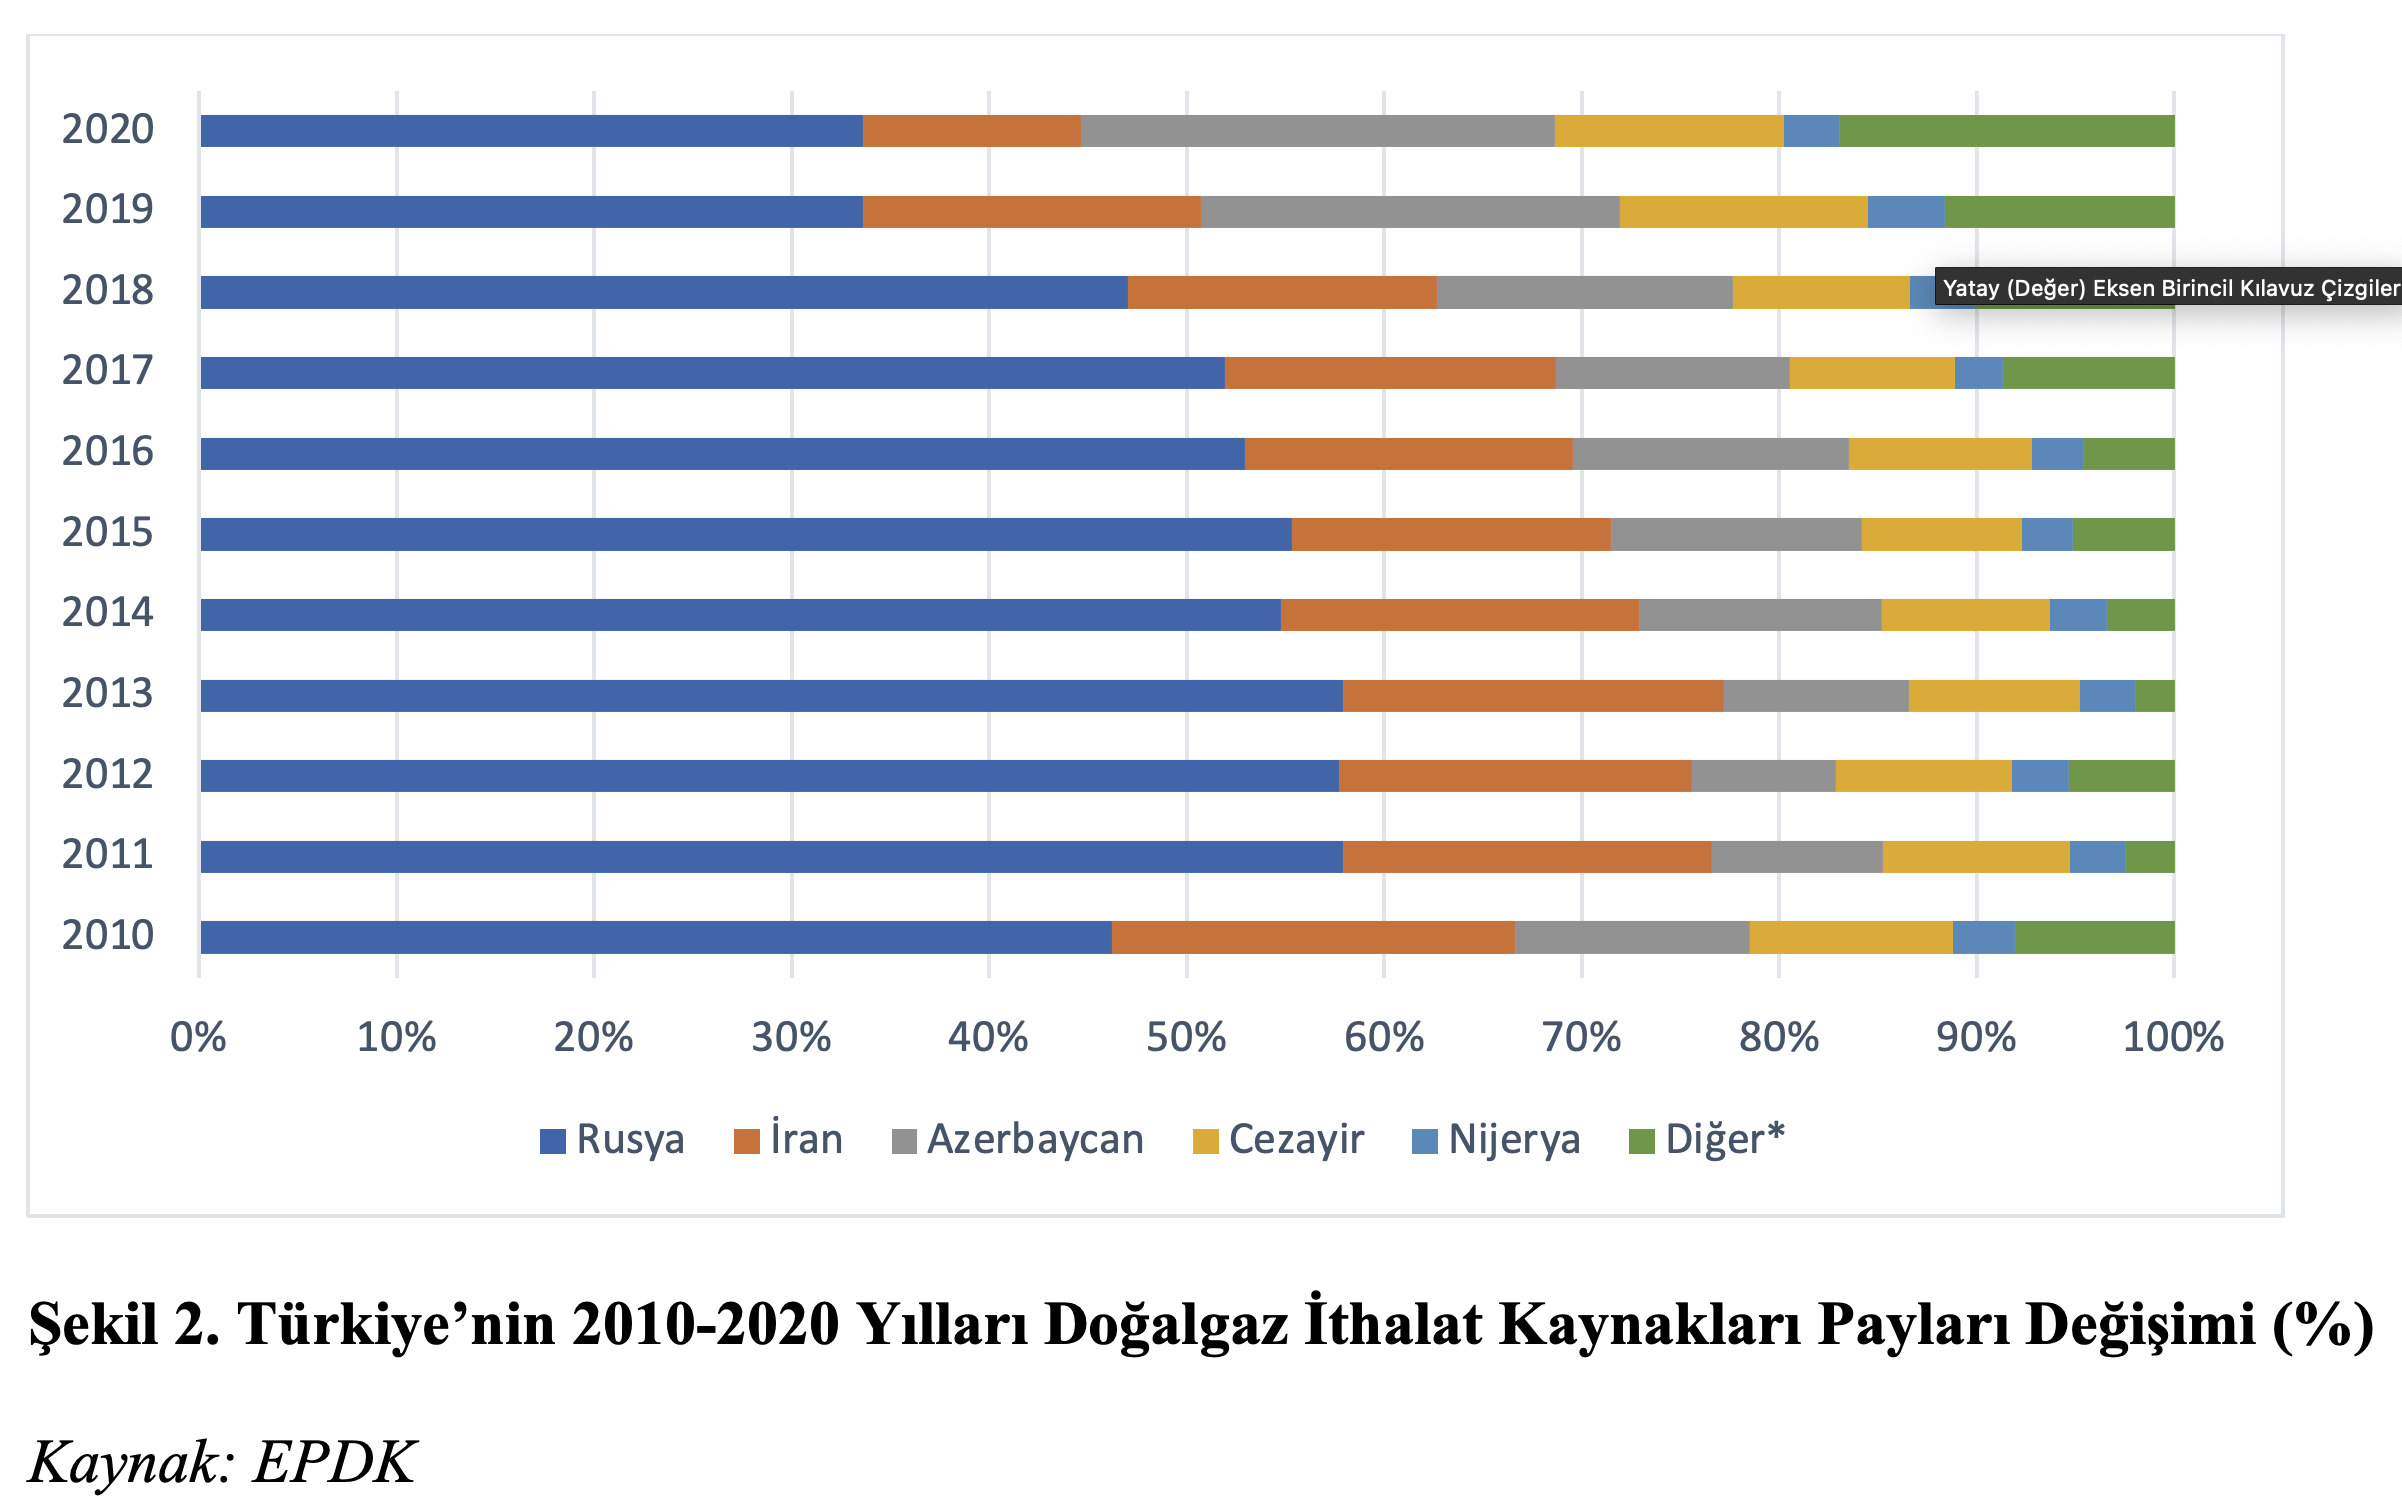 Şekil 2. Türkiye’nin 2010-2020 Yılları Doğalgaz İthalat Kaynakları Payları Değişimi (%)